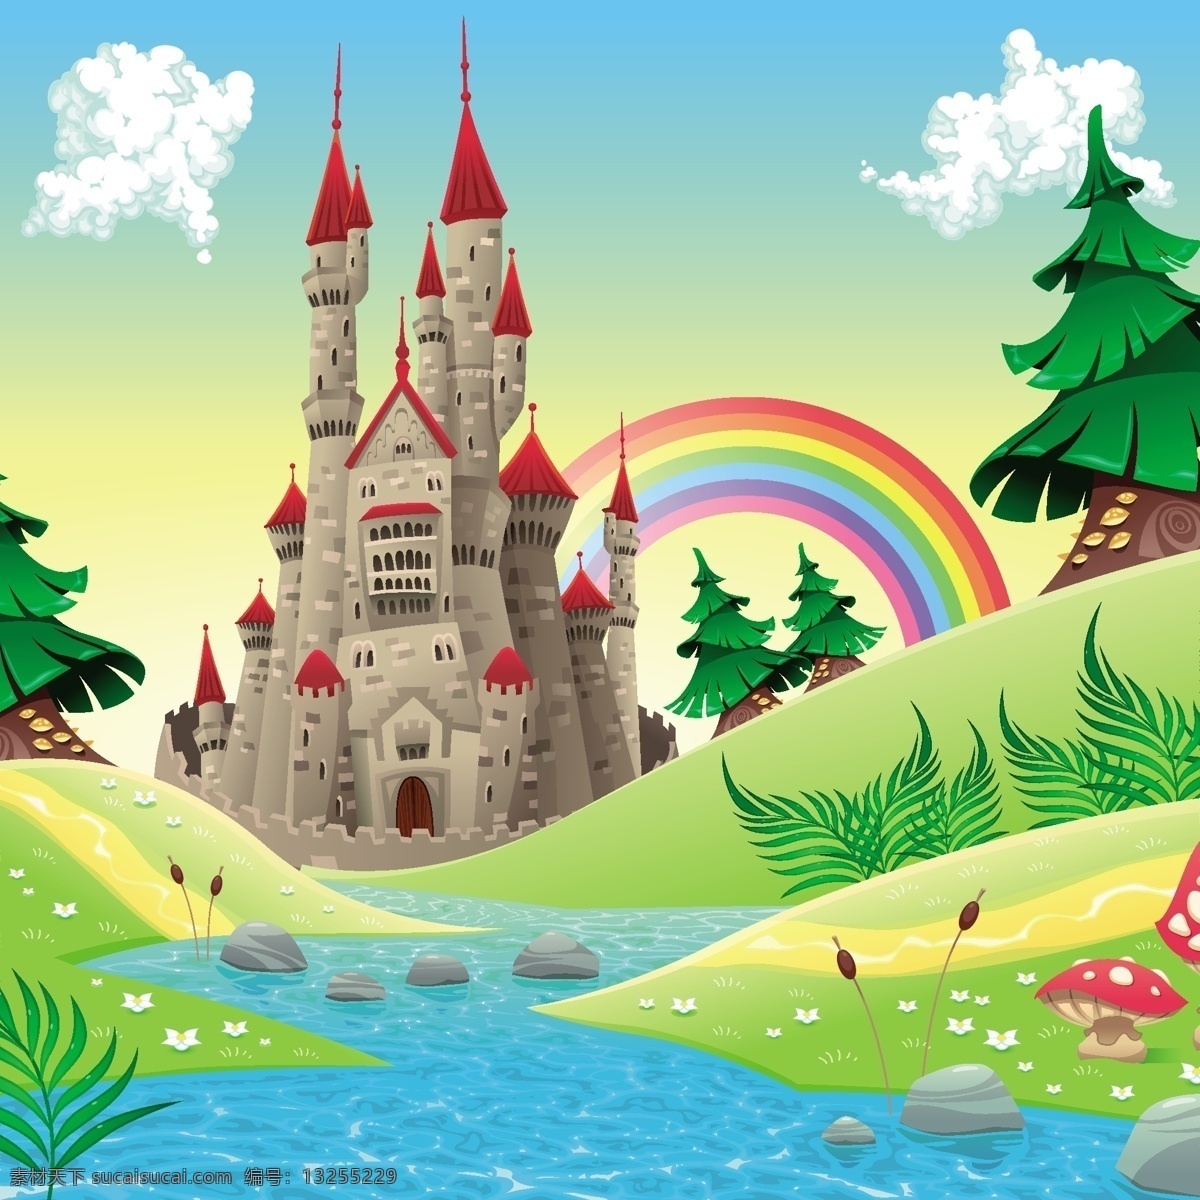 矢量 城堡 风景 图 矢量风景图 矢量城堡 矢量天空 适量河水 矢量水 矢量草地 卡通城堡 矢量彩虹 动漫动画 风景漫画